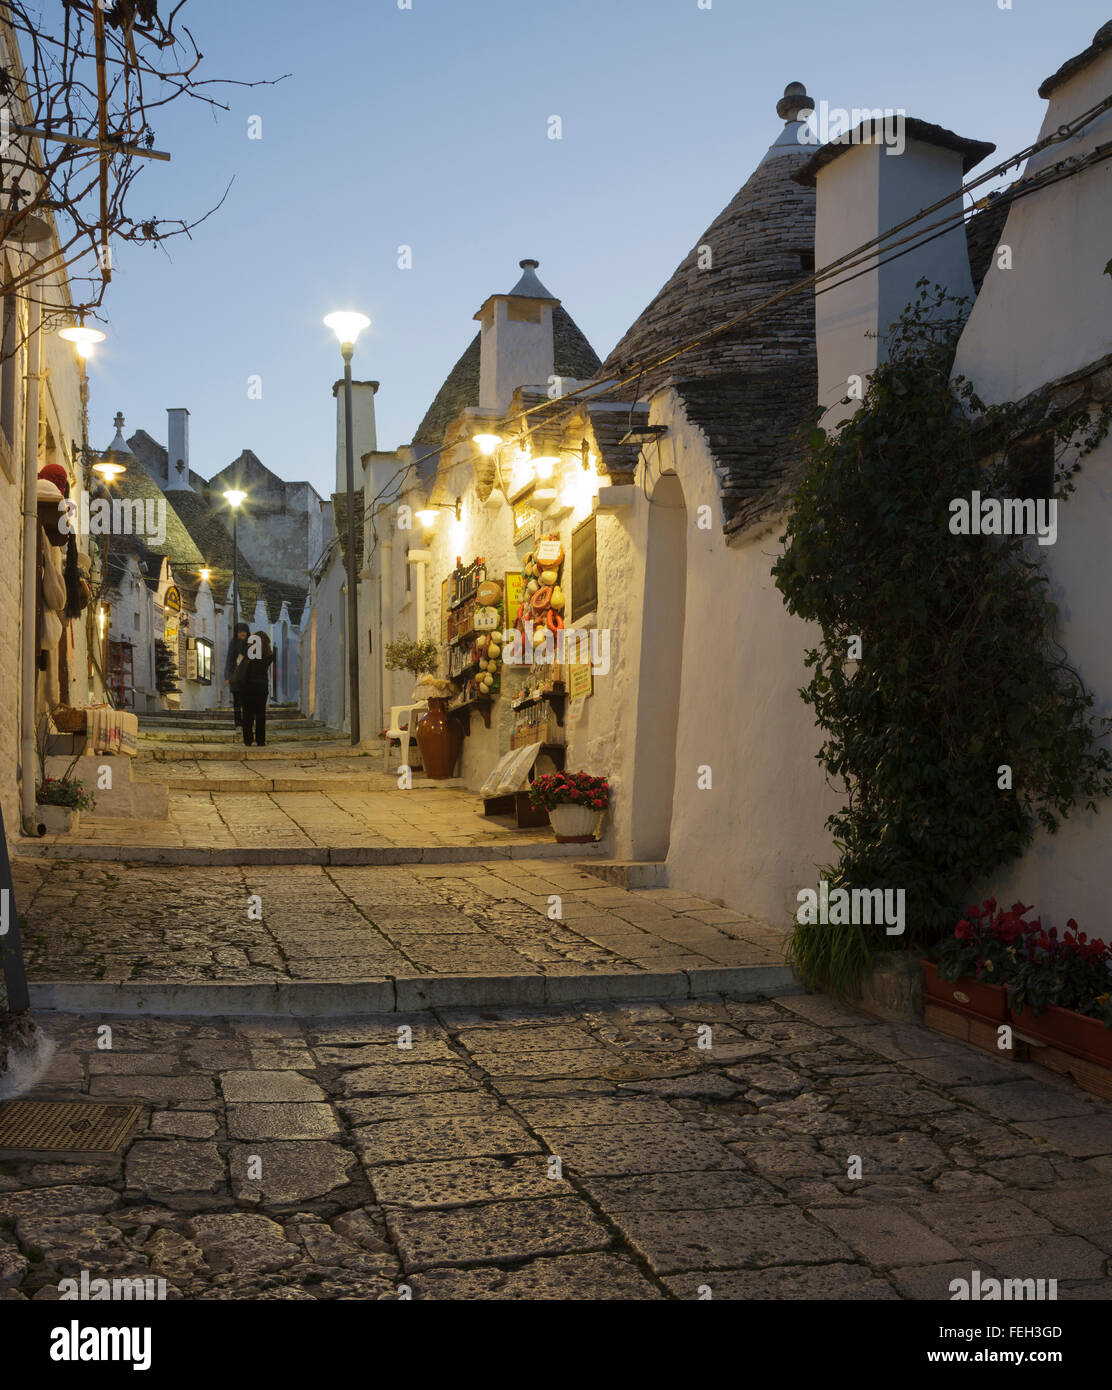 Rue et boutiques dans le quartier de Rione Monti trulli à Alberobello, dans les Pouilles, Italie Banque D'Images